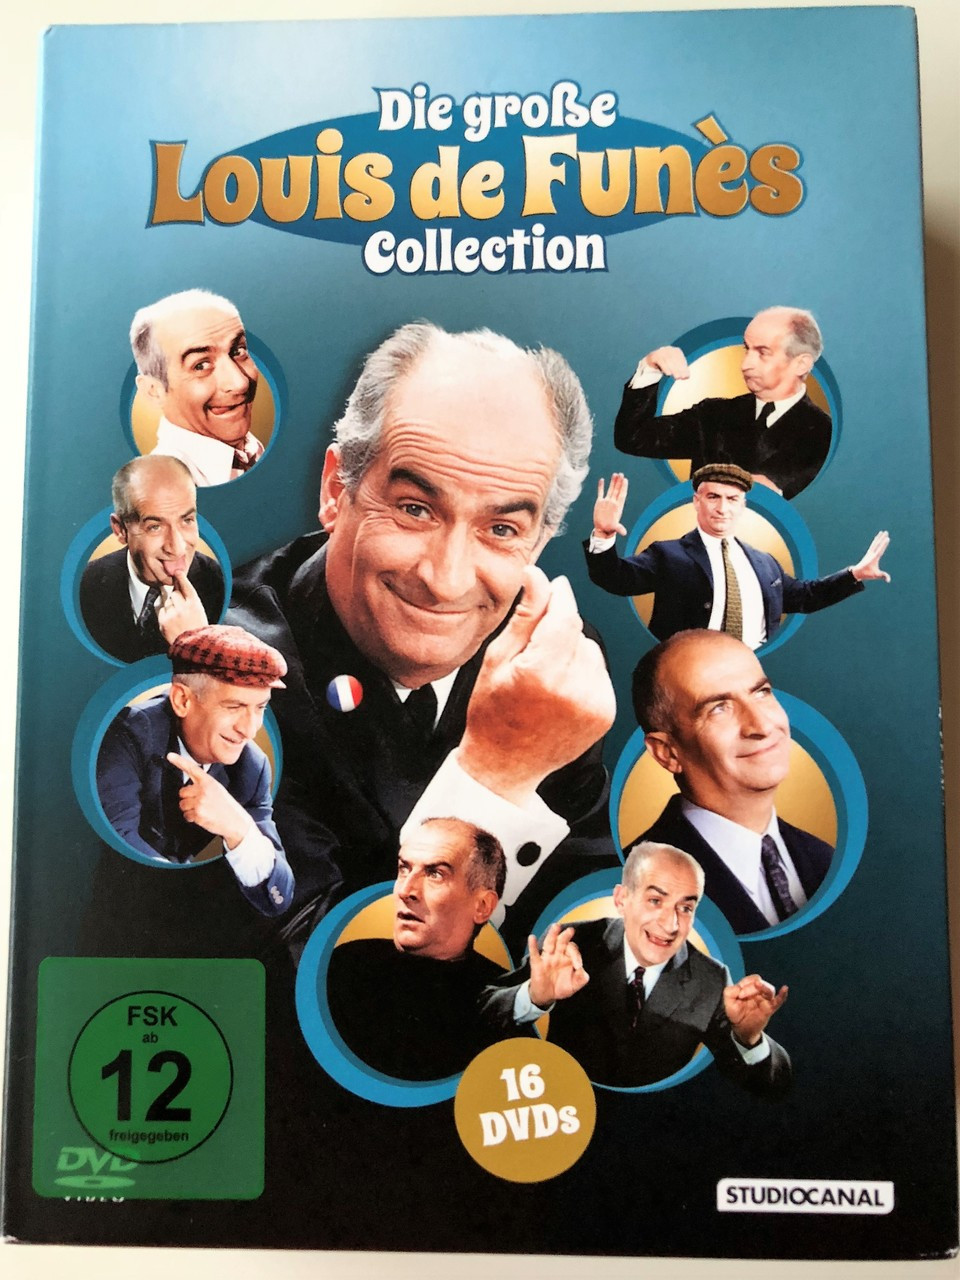 The BIG Louis de Funès DVD BOX / Die große Louis de Funès Collection 16 DVDs  / Audio Options: French or German / Subtitle: German - Bible in My Language